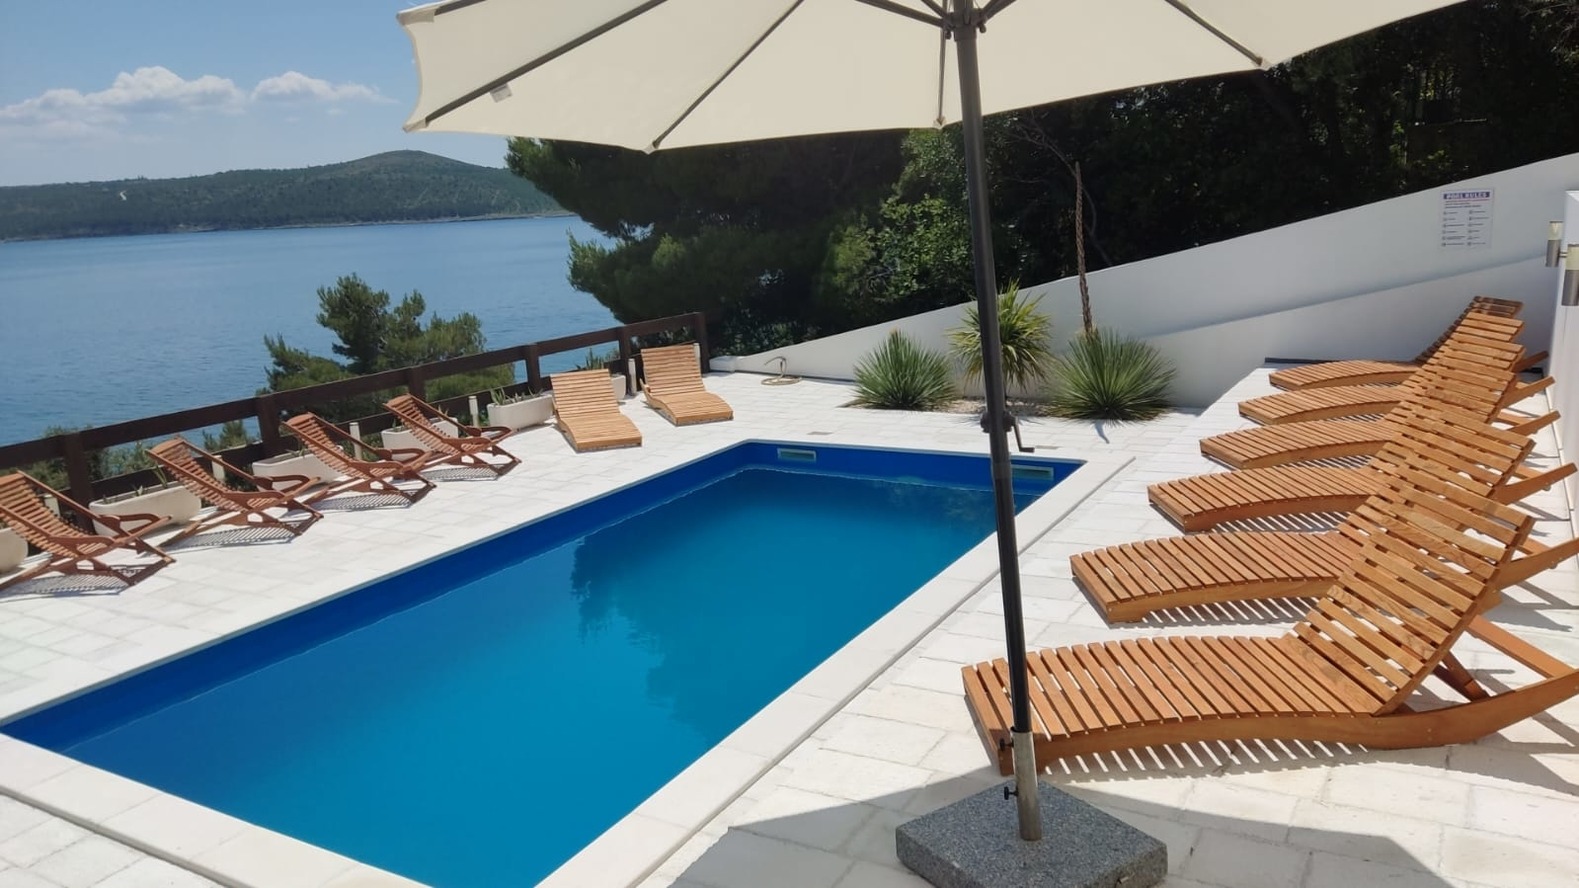 Seaside Villa mit Pool für 12 Personen Ferienhaus in Kroatien